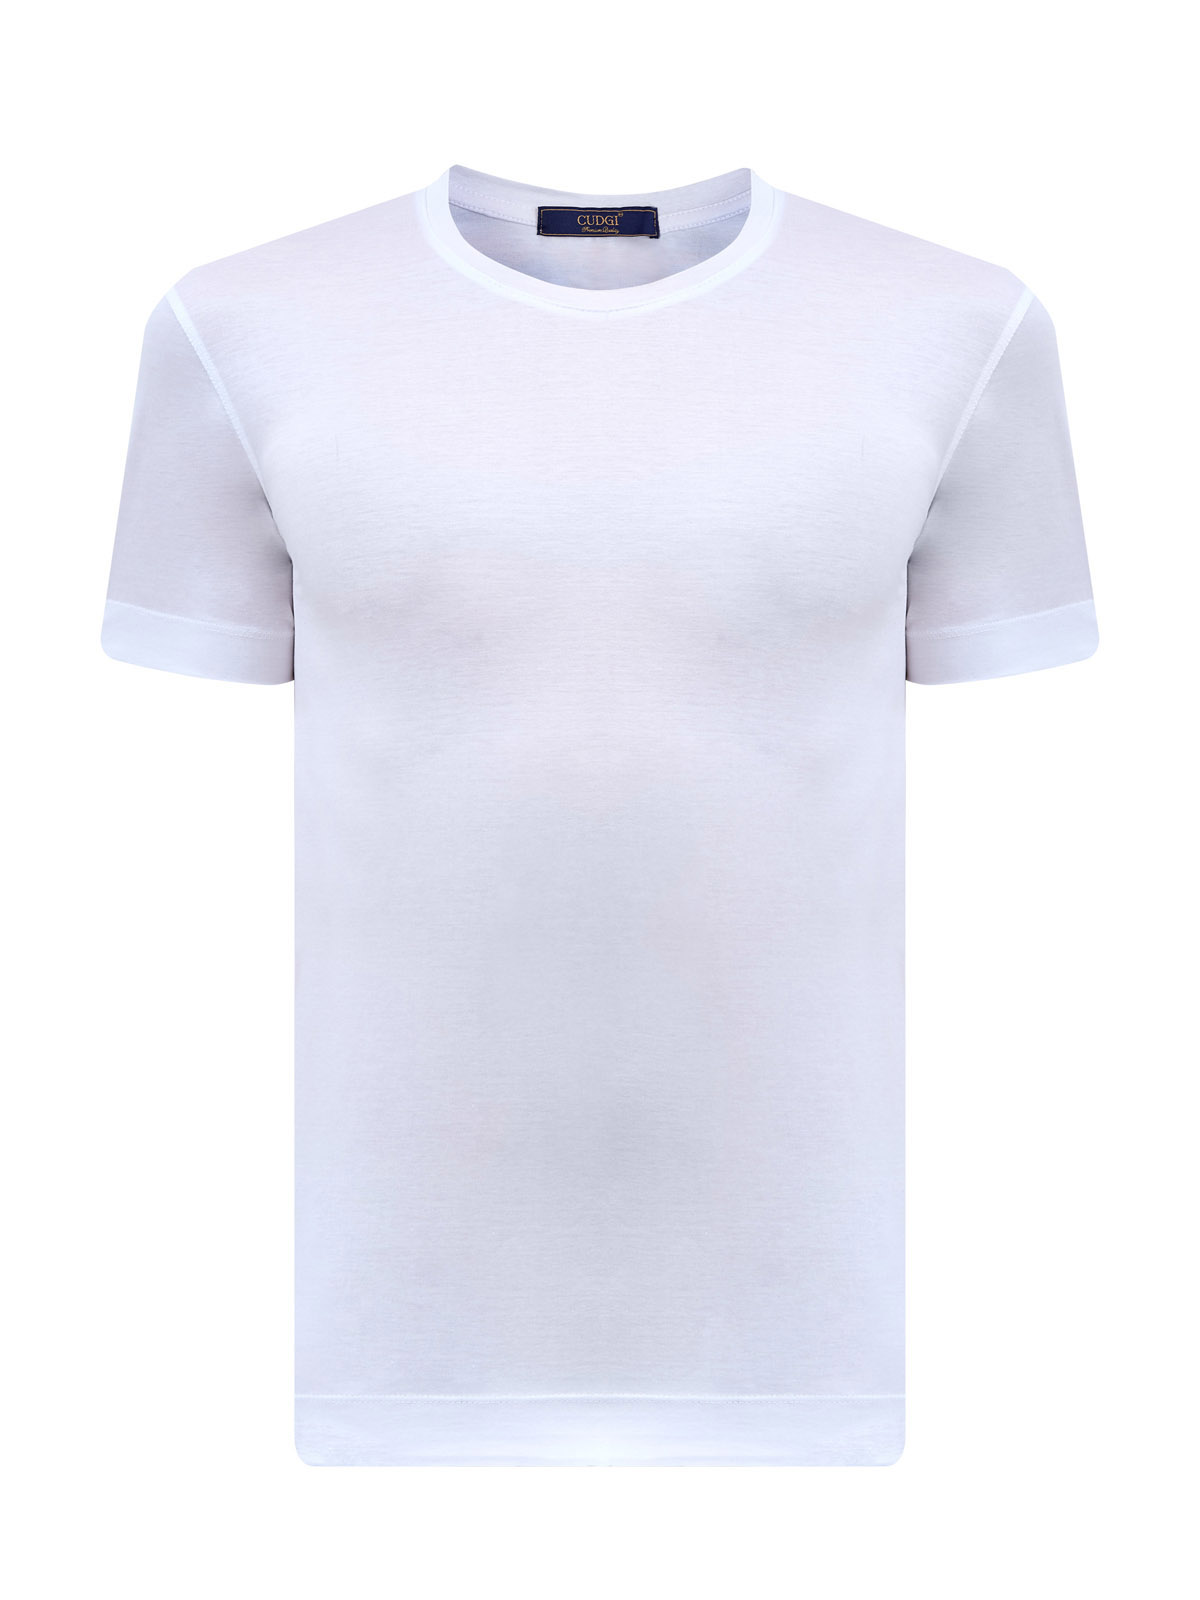 Базовая футболка из хлопка, шелка и тенселя с нашивкой CUDGI, цвет белый, размер 56